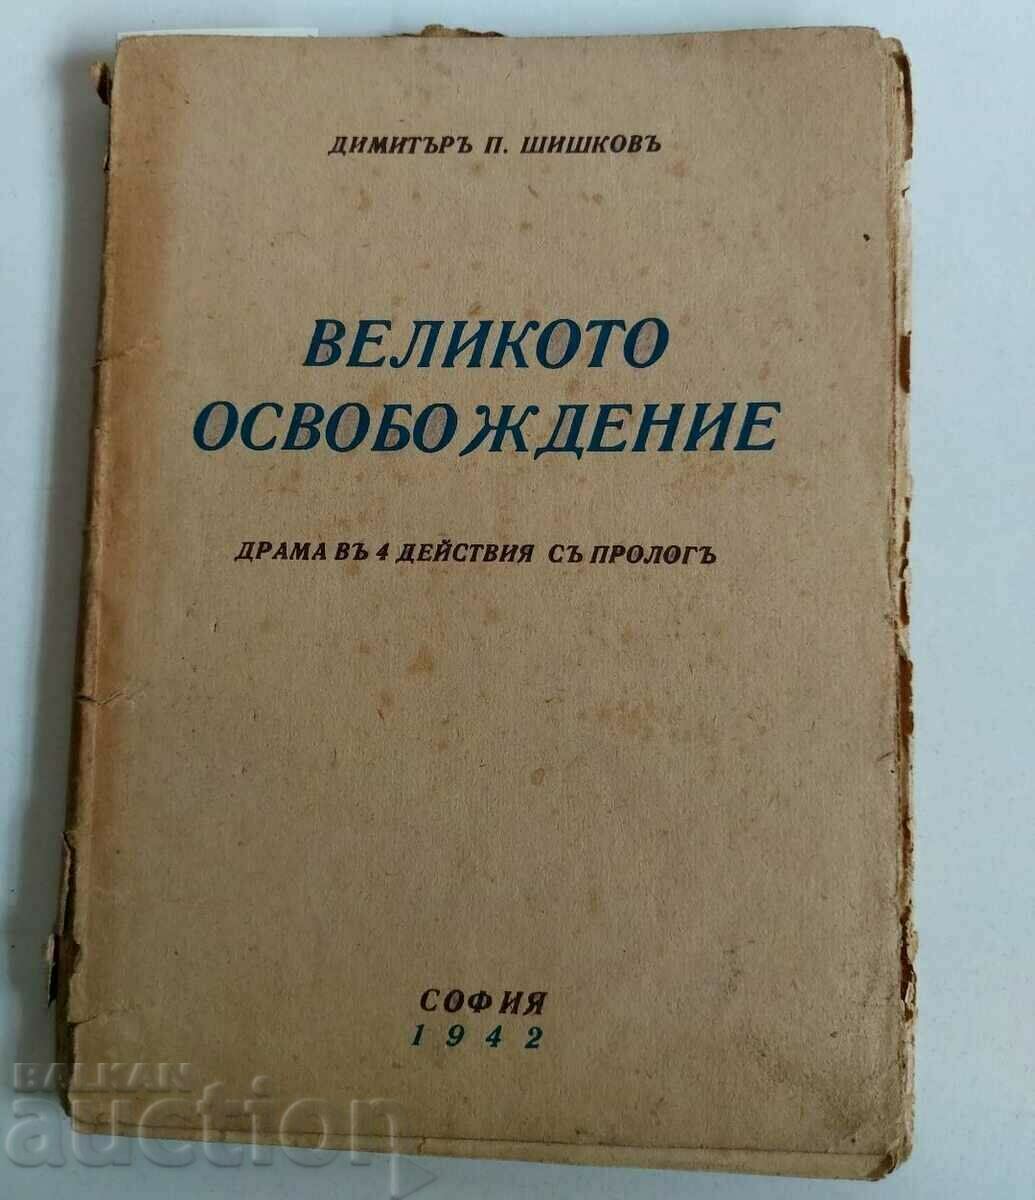 1942 MAREA DRAMA DE ELIBERARE DIMITAR SHISHKOV